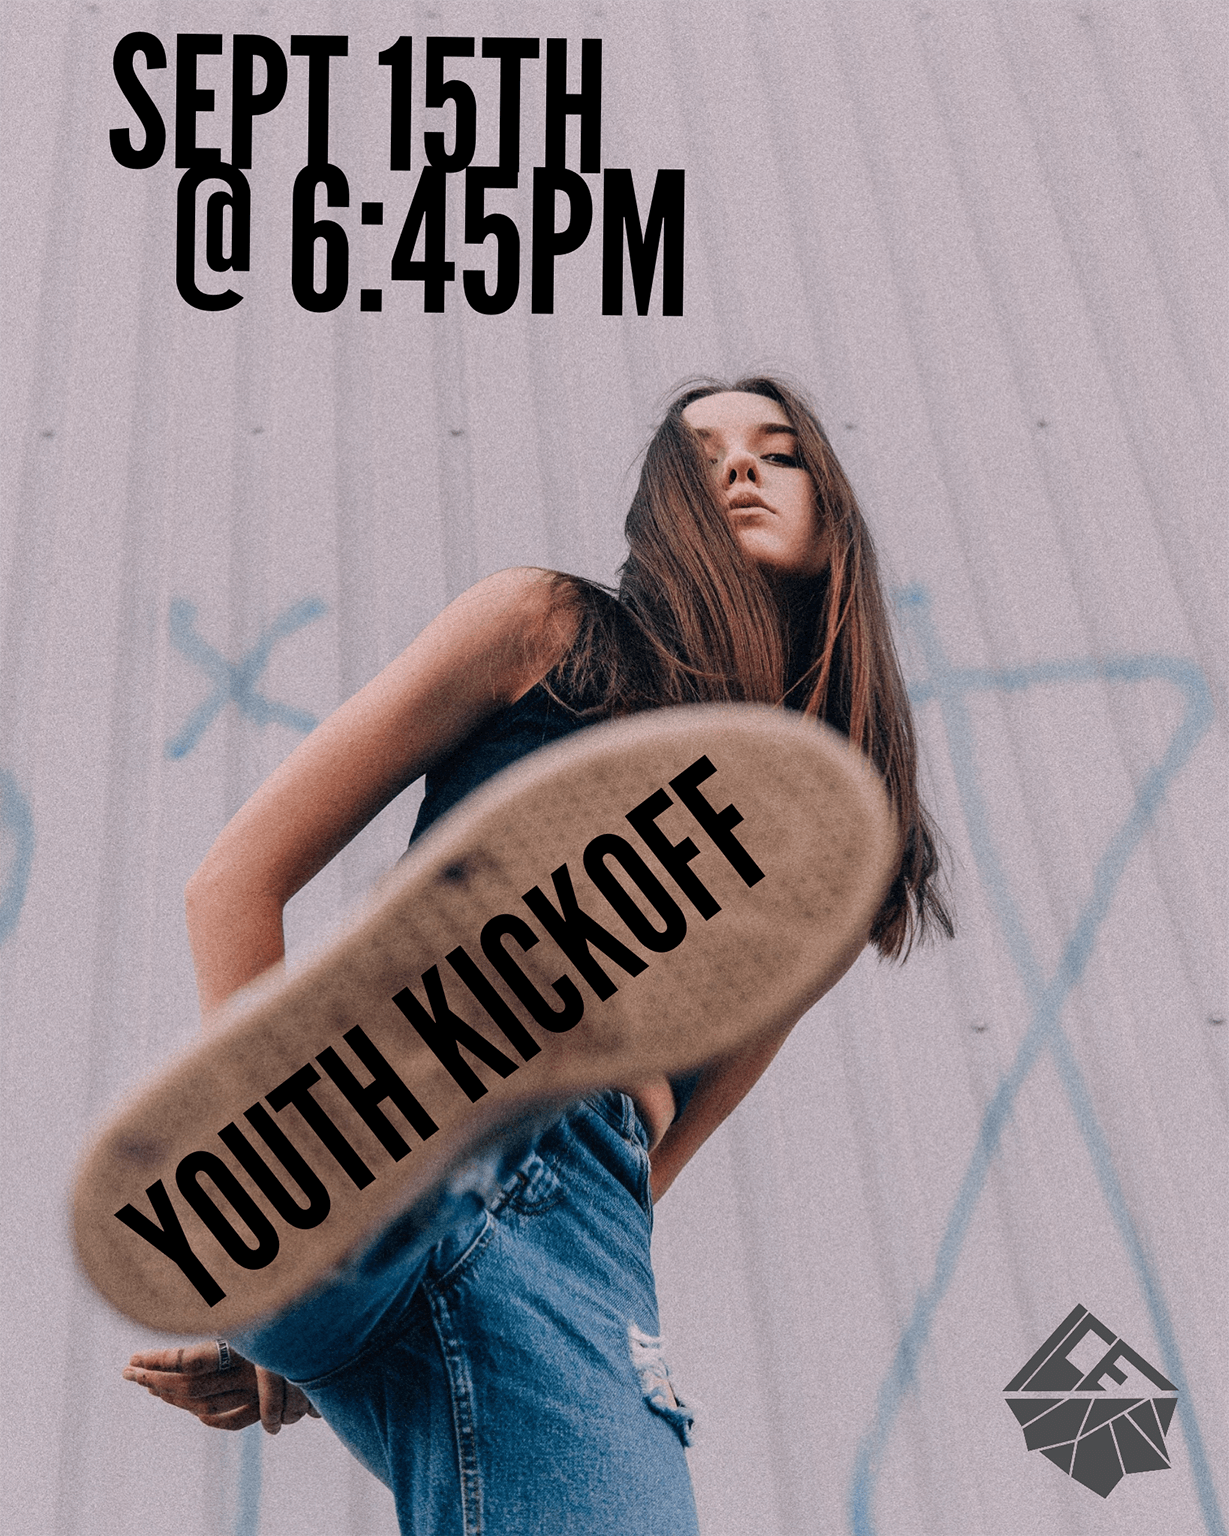 Youth Kickoff September 17